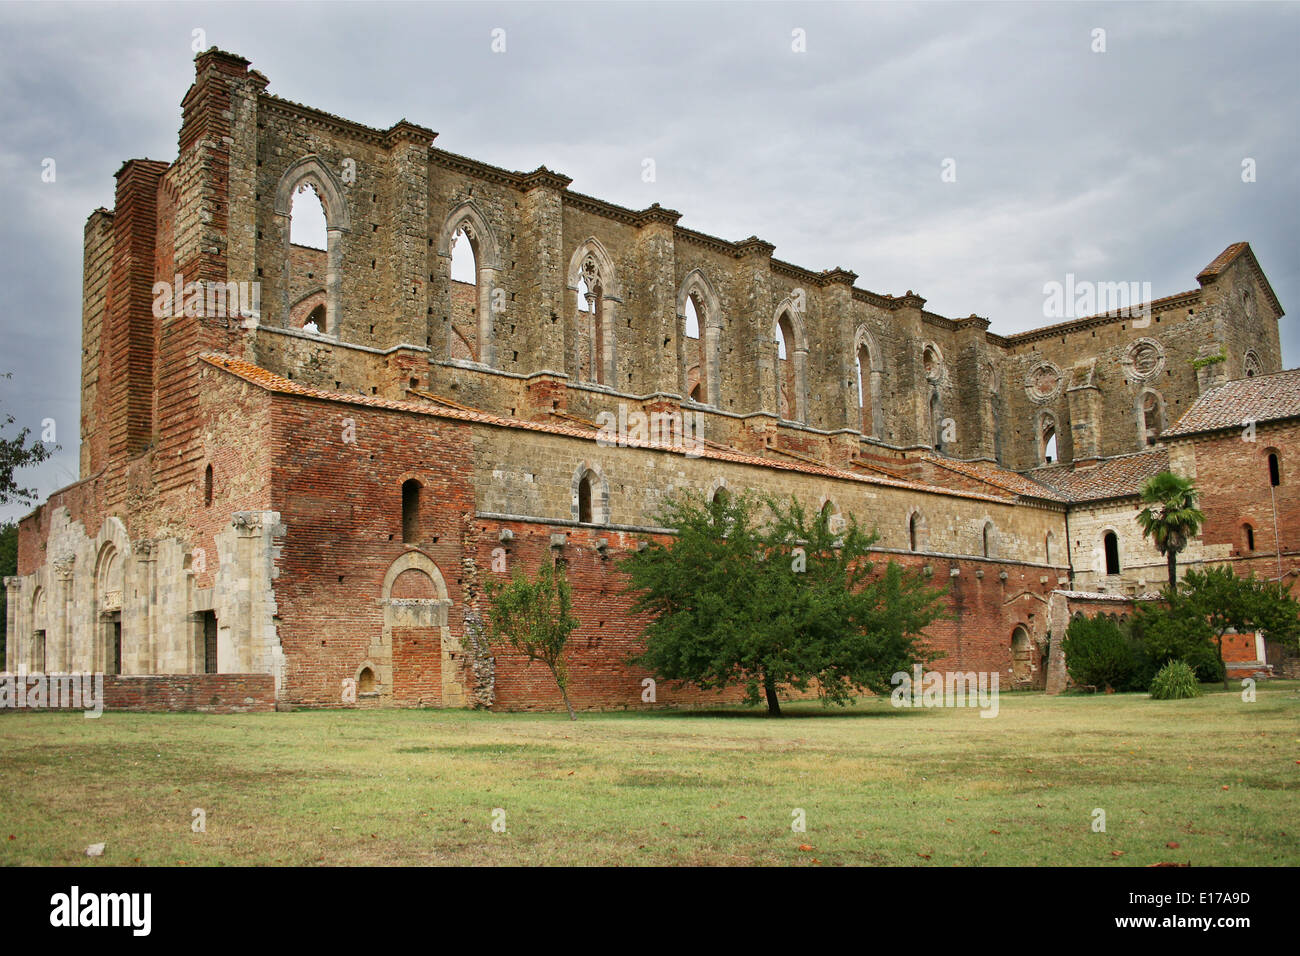 San Galgano Abbey in Siena, Tuscany, Italy. Stock Photo